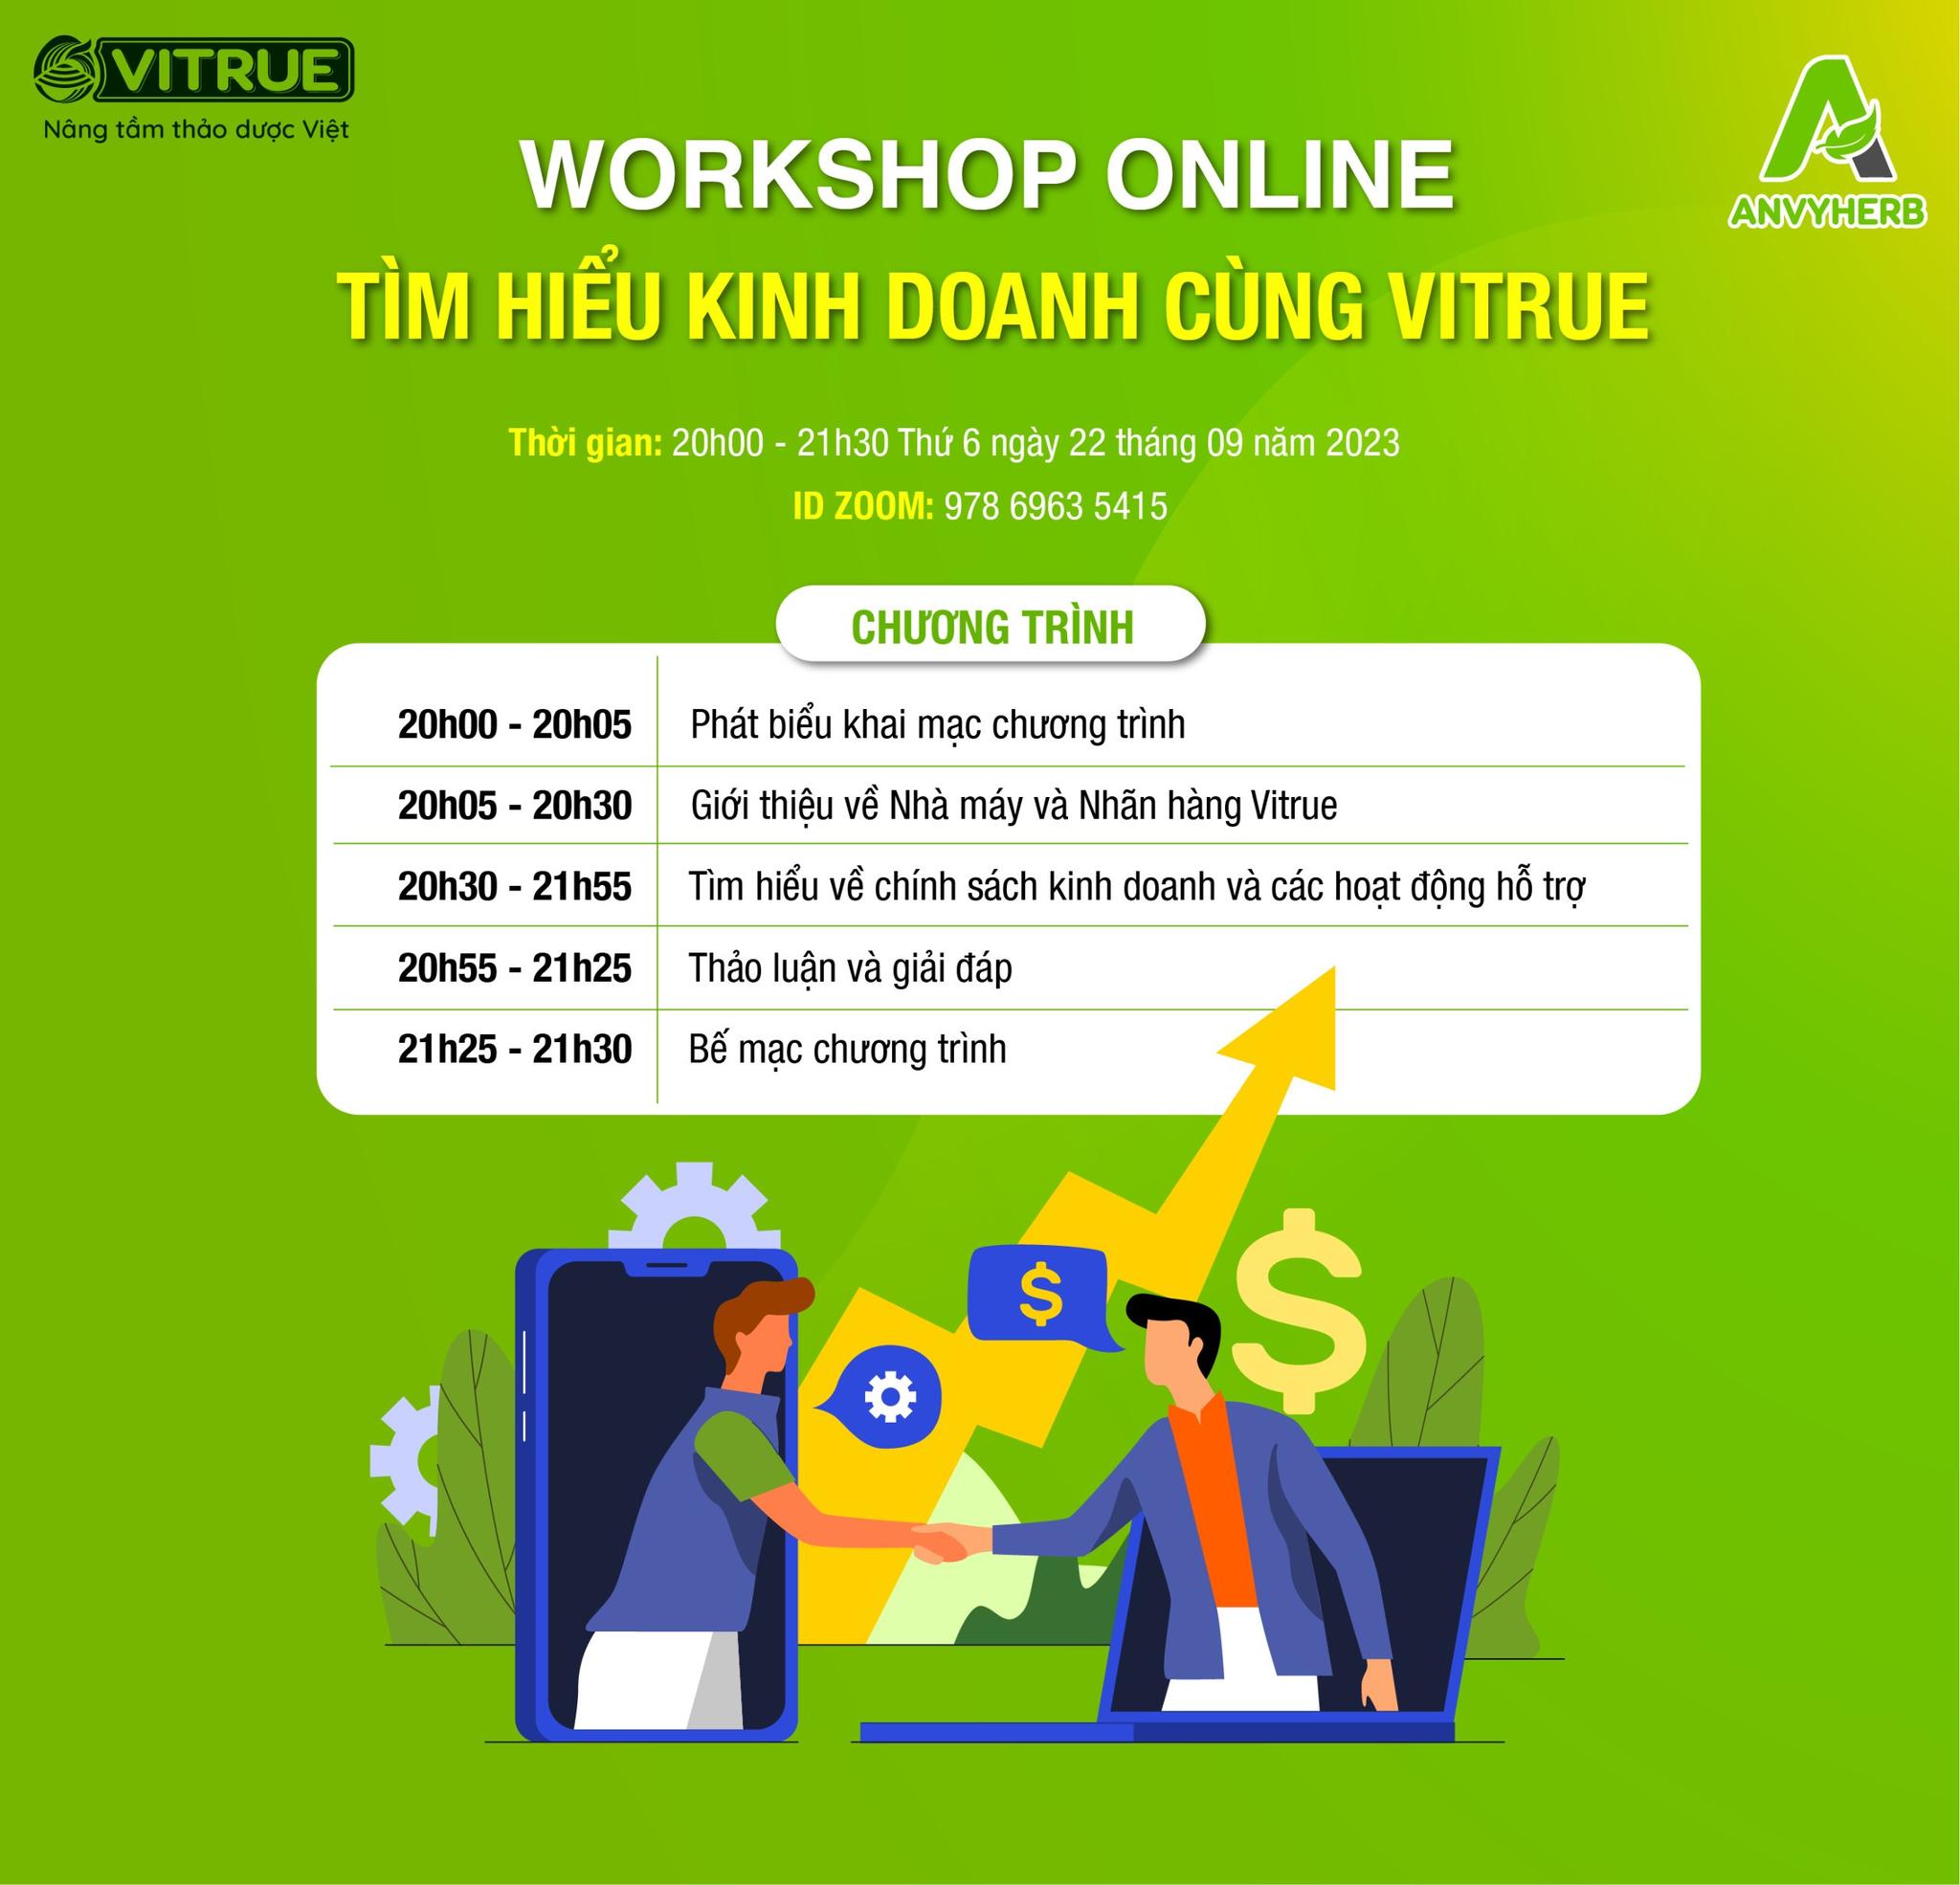 Workshop online: Tìm hiểu kinh doanh cùng Vitrue